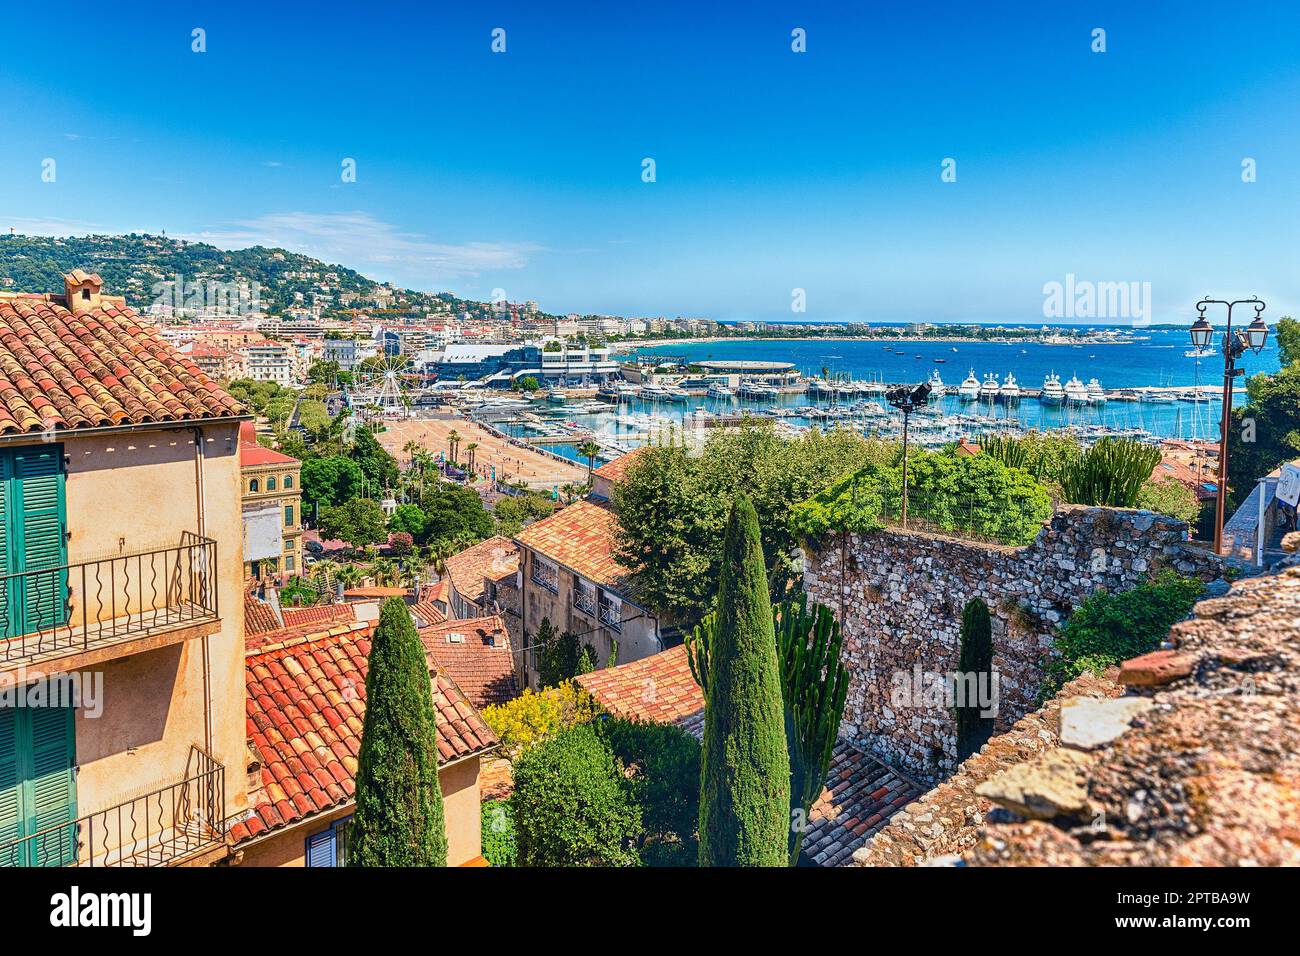 Luftaufnahme über den Vieux Port (Alter Hafen) und das Stadtzentrum von Cannes, Cote d'Azur, Frankreich Stockfoto